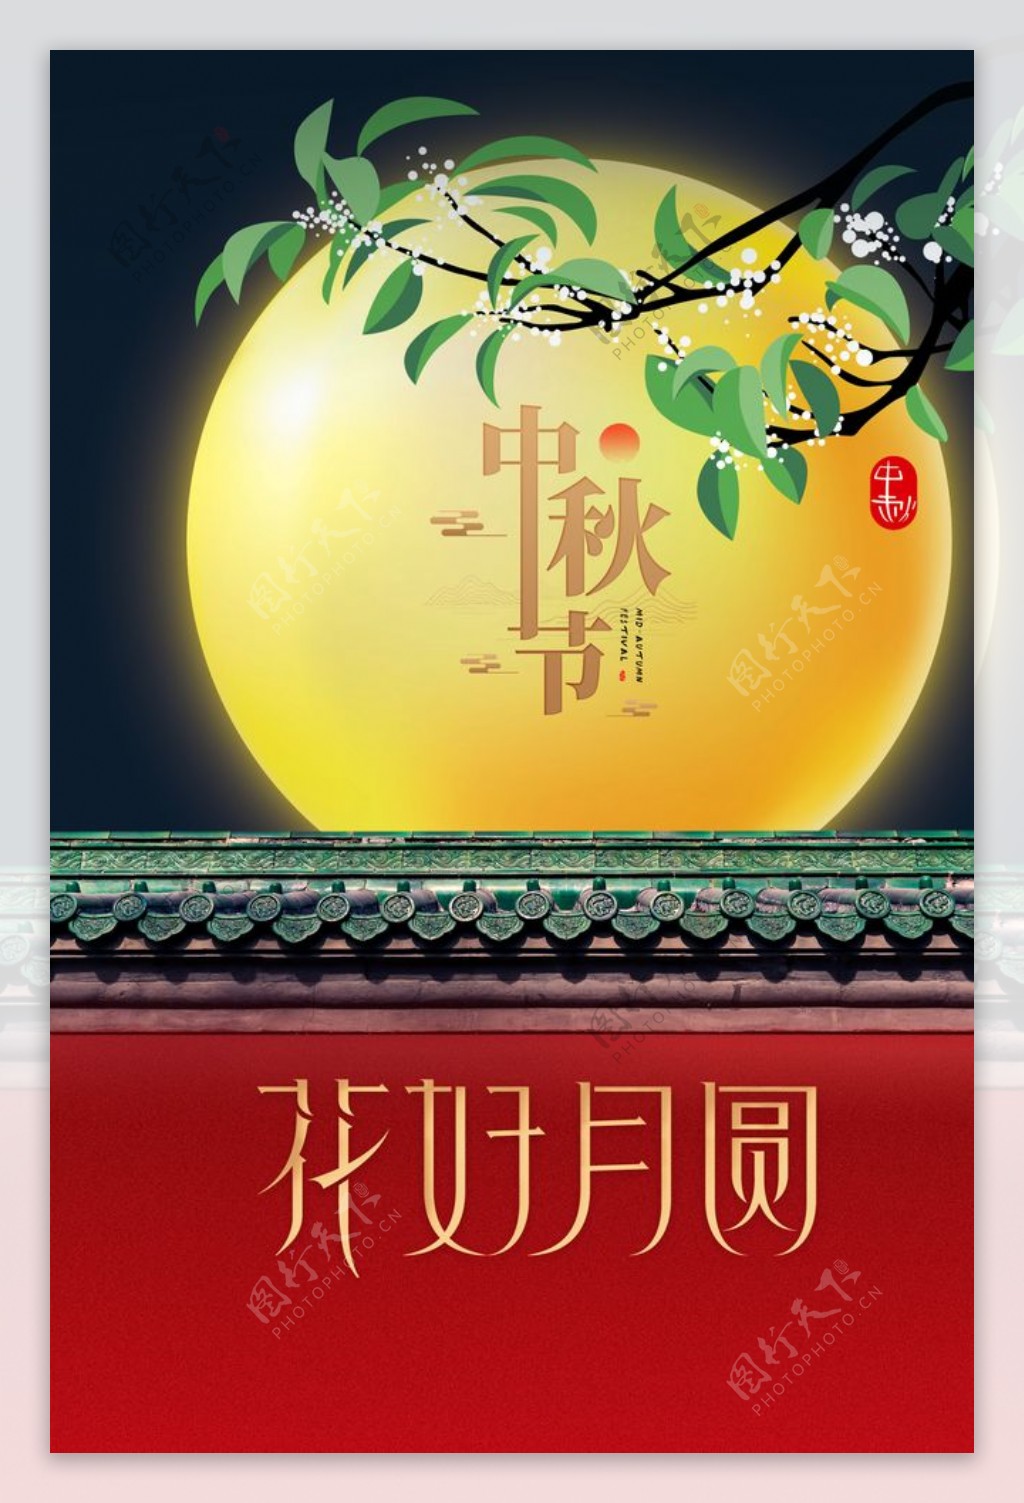 中秋传统节日活动宣传海报素材图片